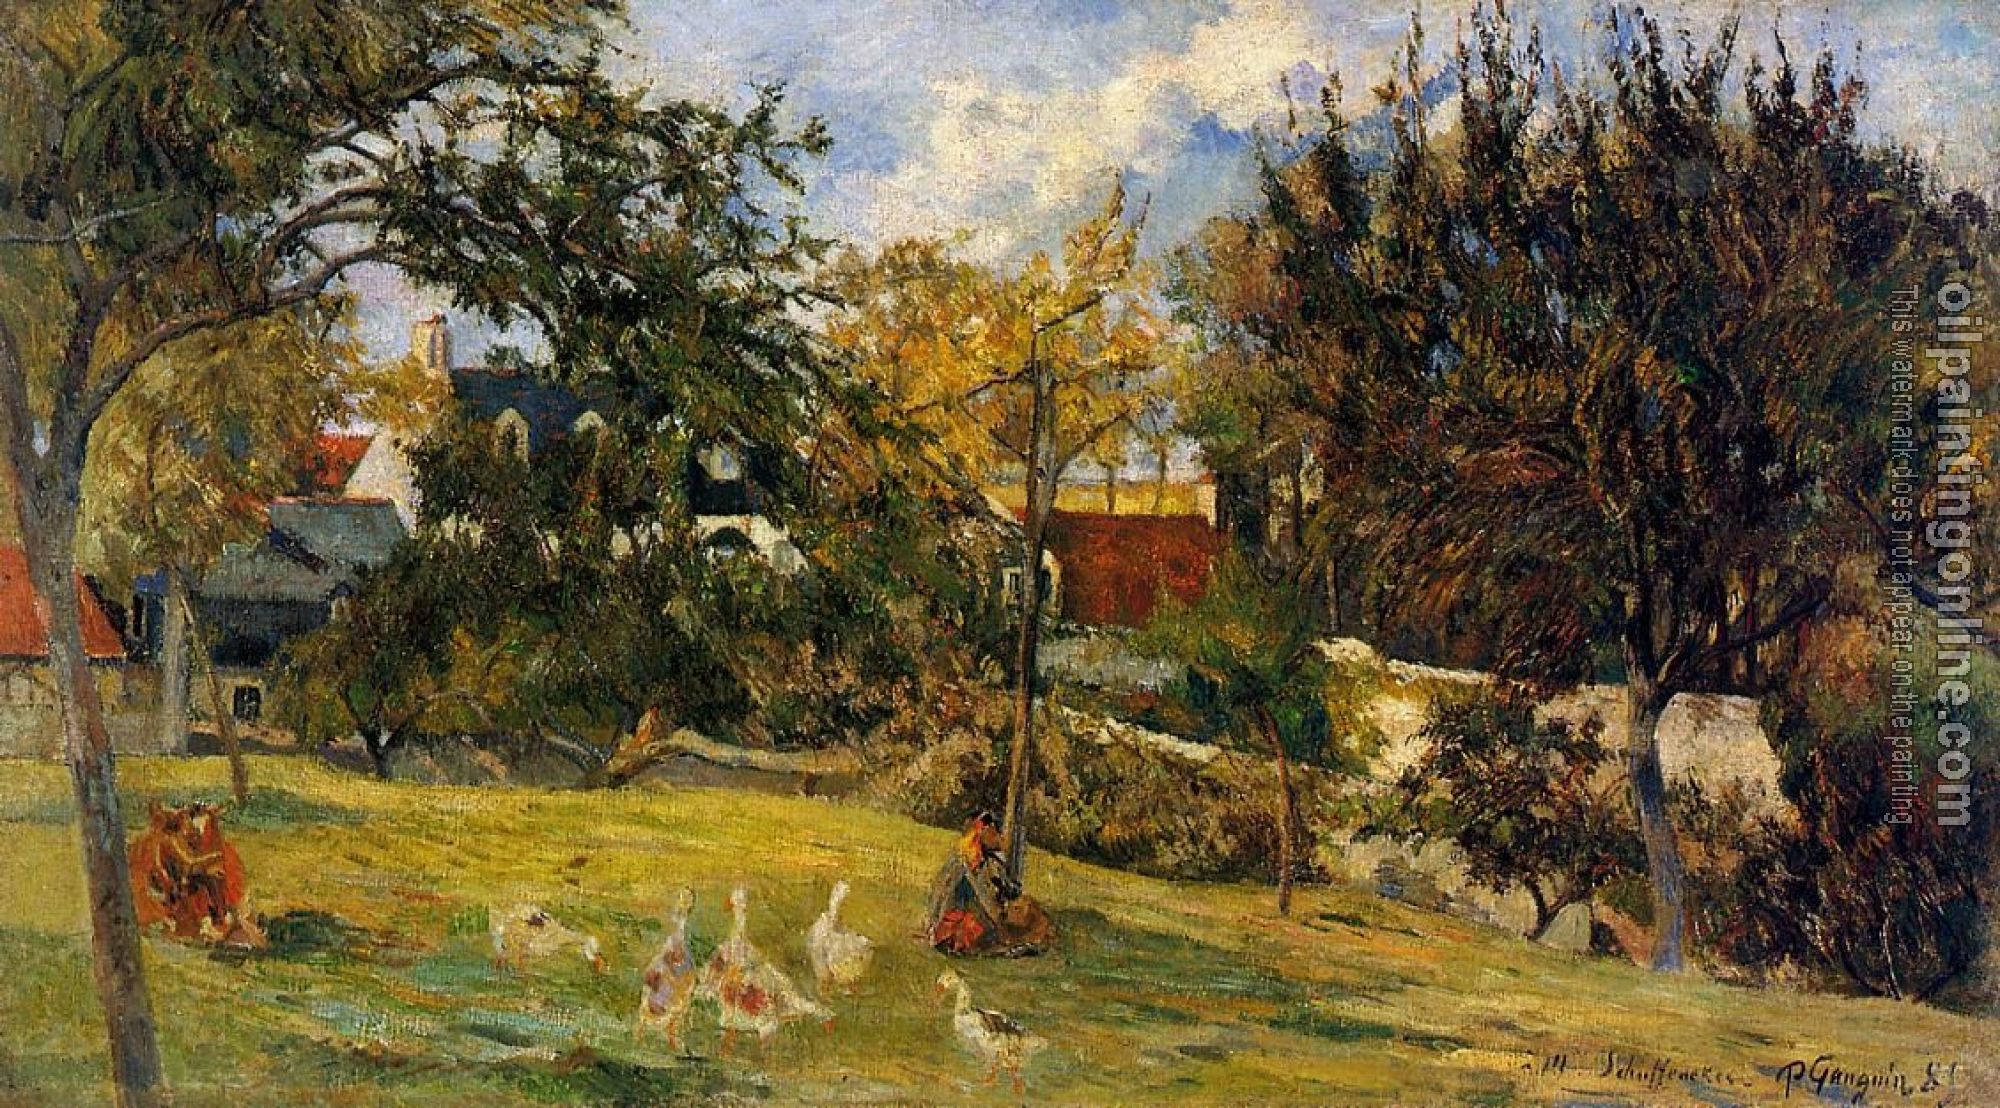 Gauguin, Paul - Geese in the Meadow